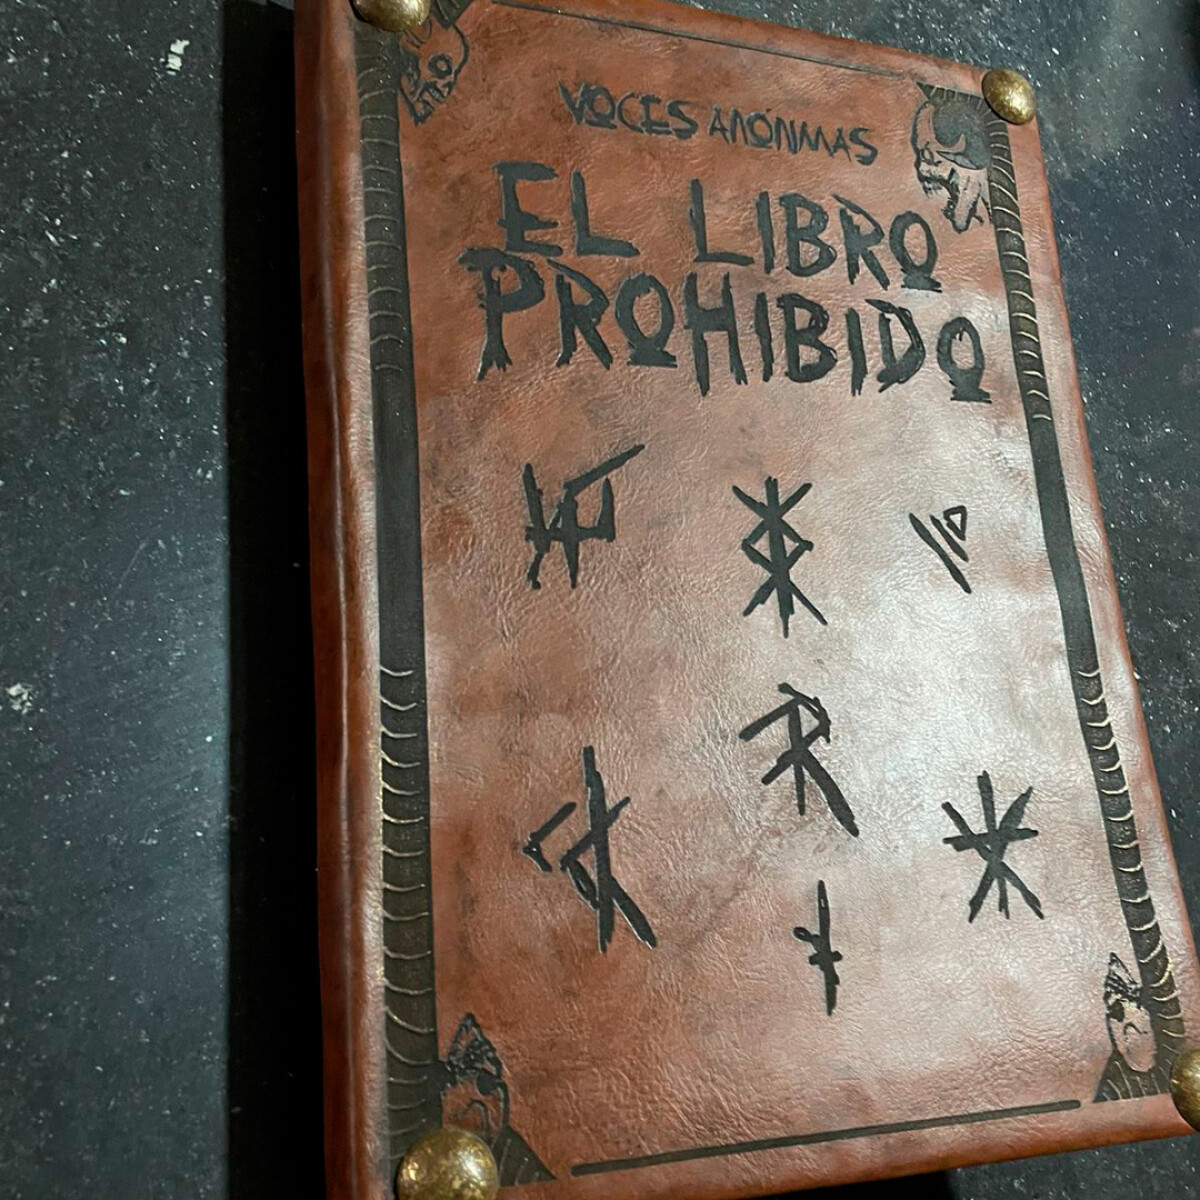 VOCES ANÓNIMAS - EL LIBRO PROHIBIDO (EDICION LIMITADA) PAGO COMPLETO + DVDS DE REGALO 